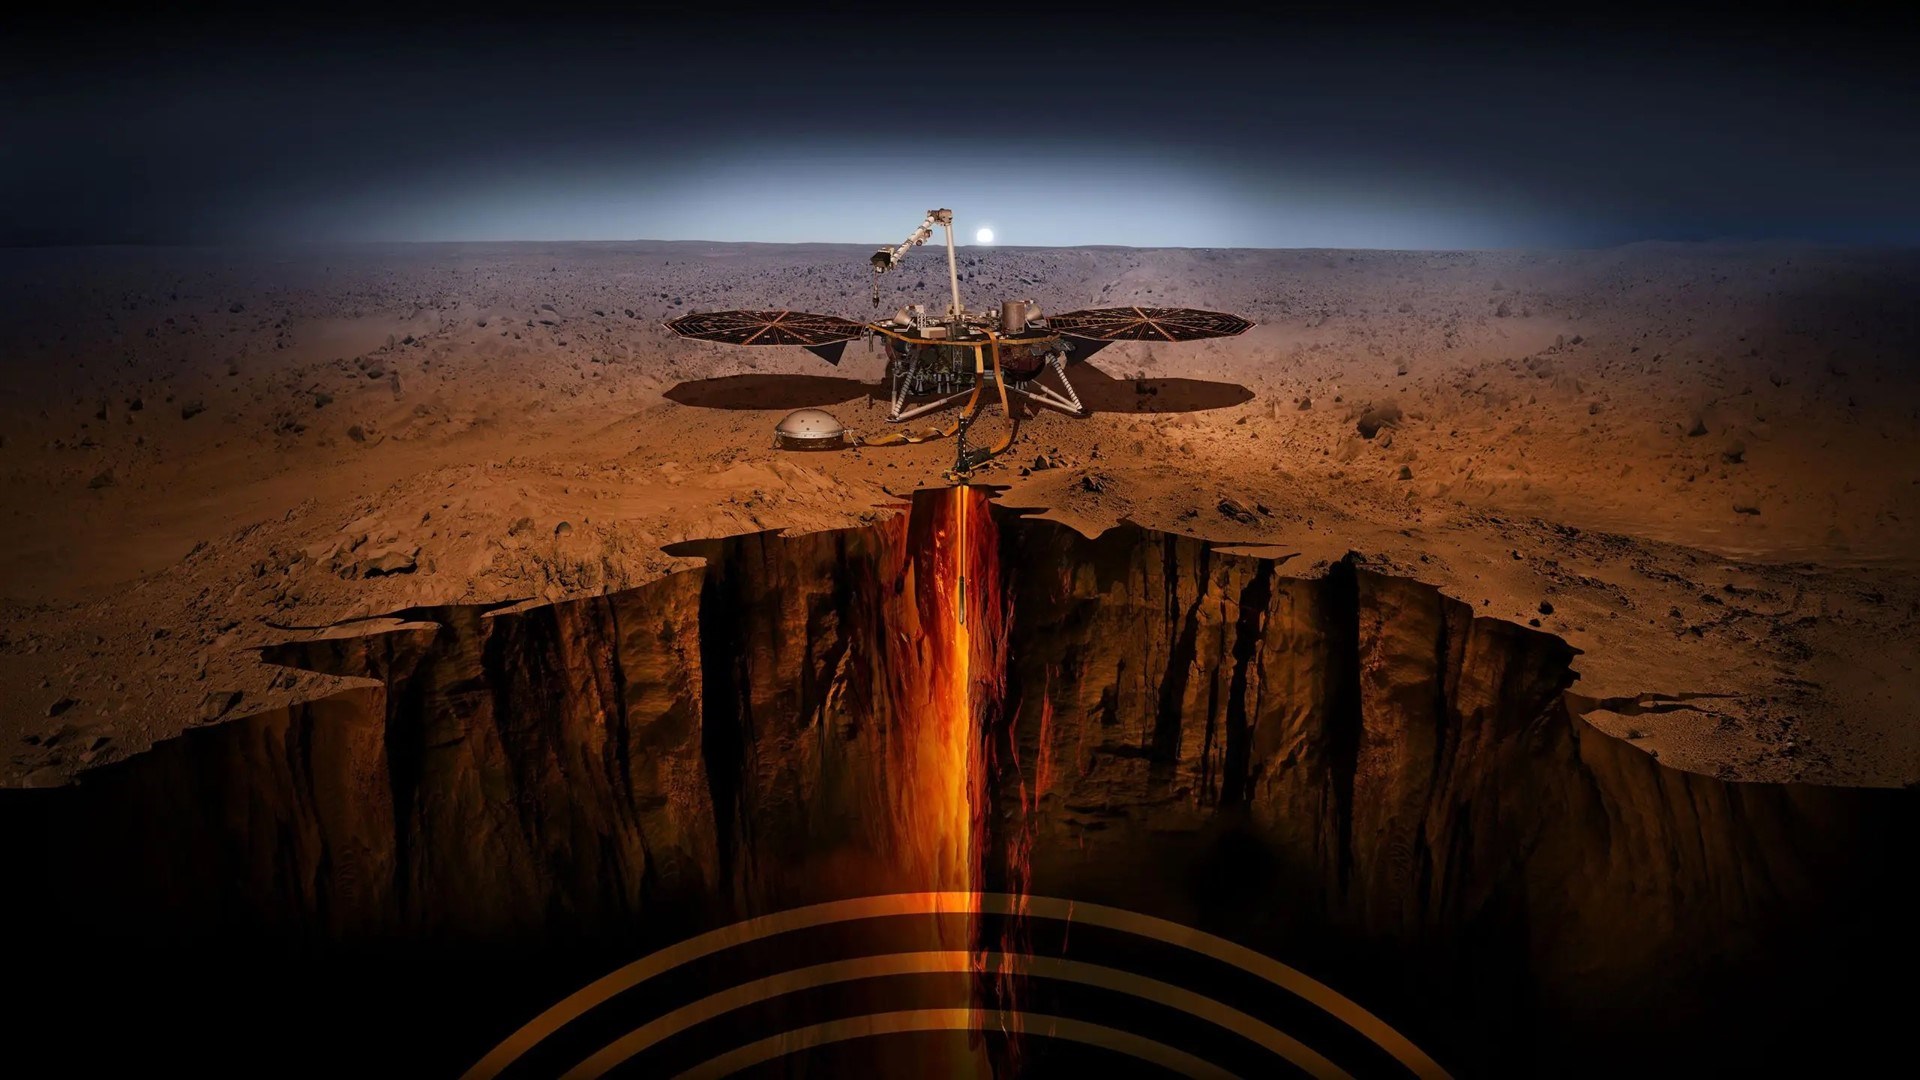 Mars’ın çekirdeği hakkındaki gizem perdesi aralandı